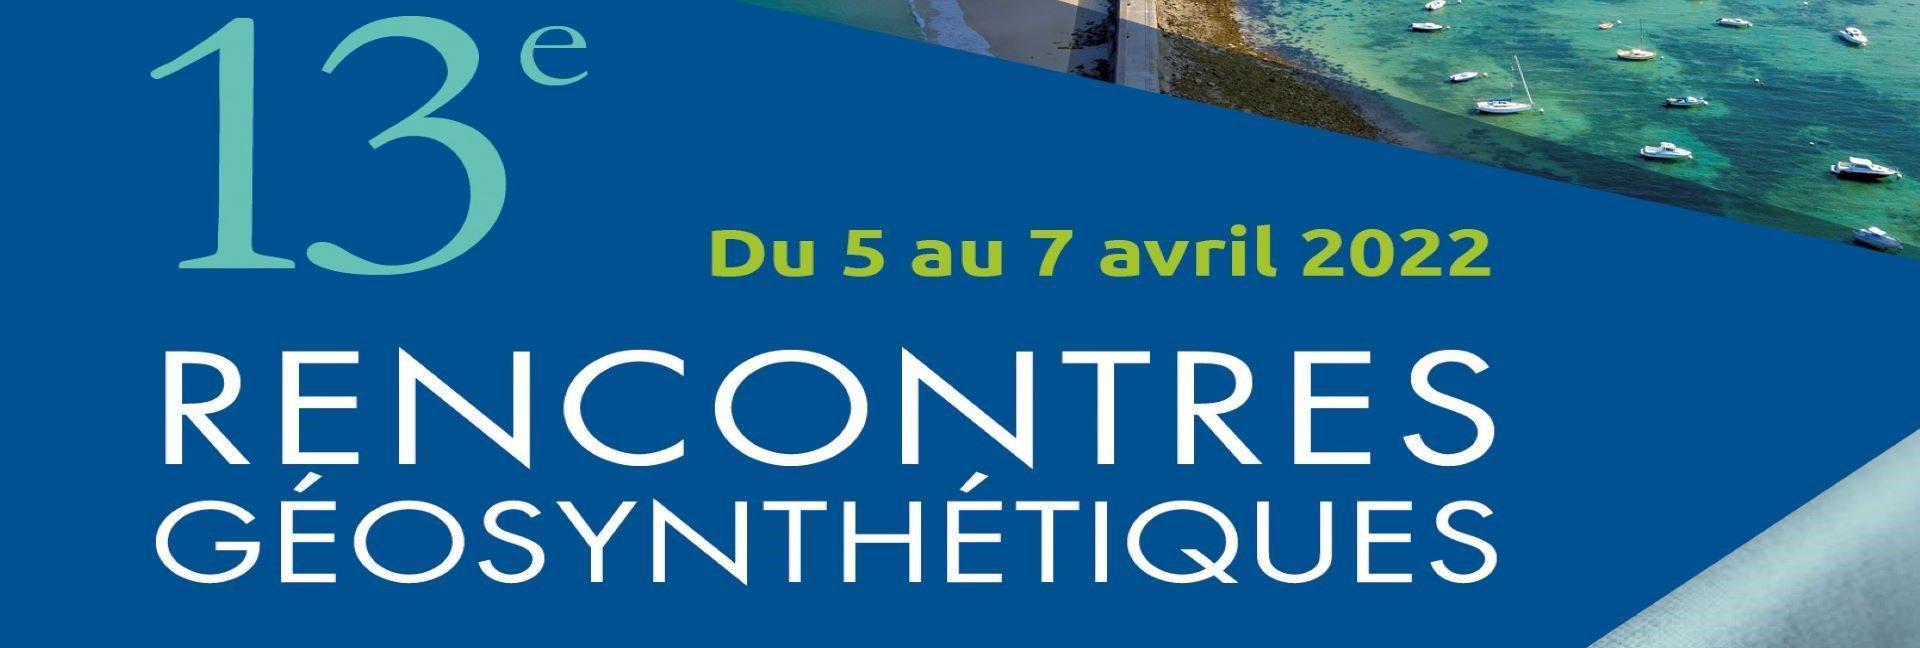 VIsuel Slide 13e colloque français sur les géotextiles, les géomembranes et les produits apparentés – du 5 au 7 avril 2022